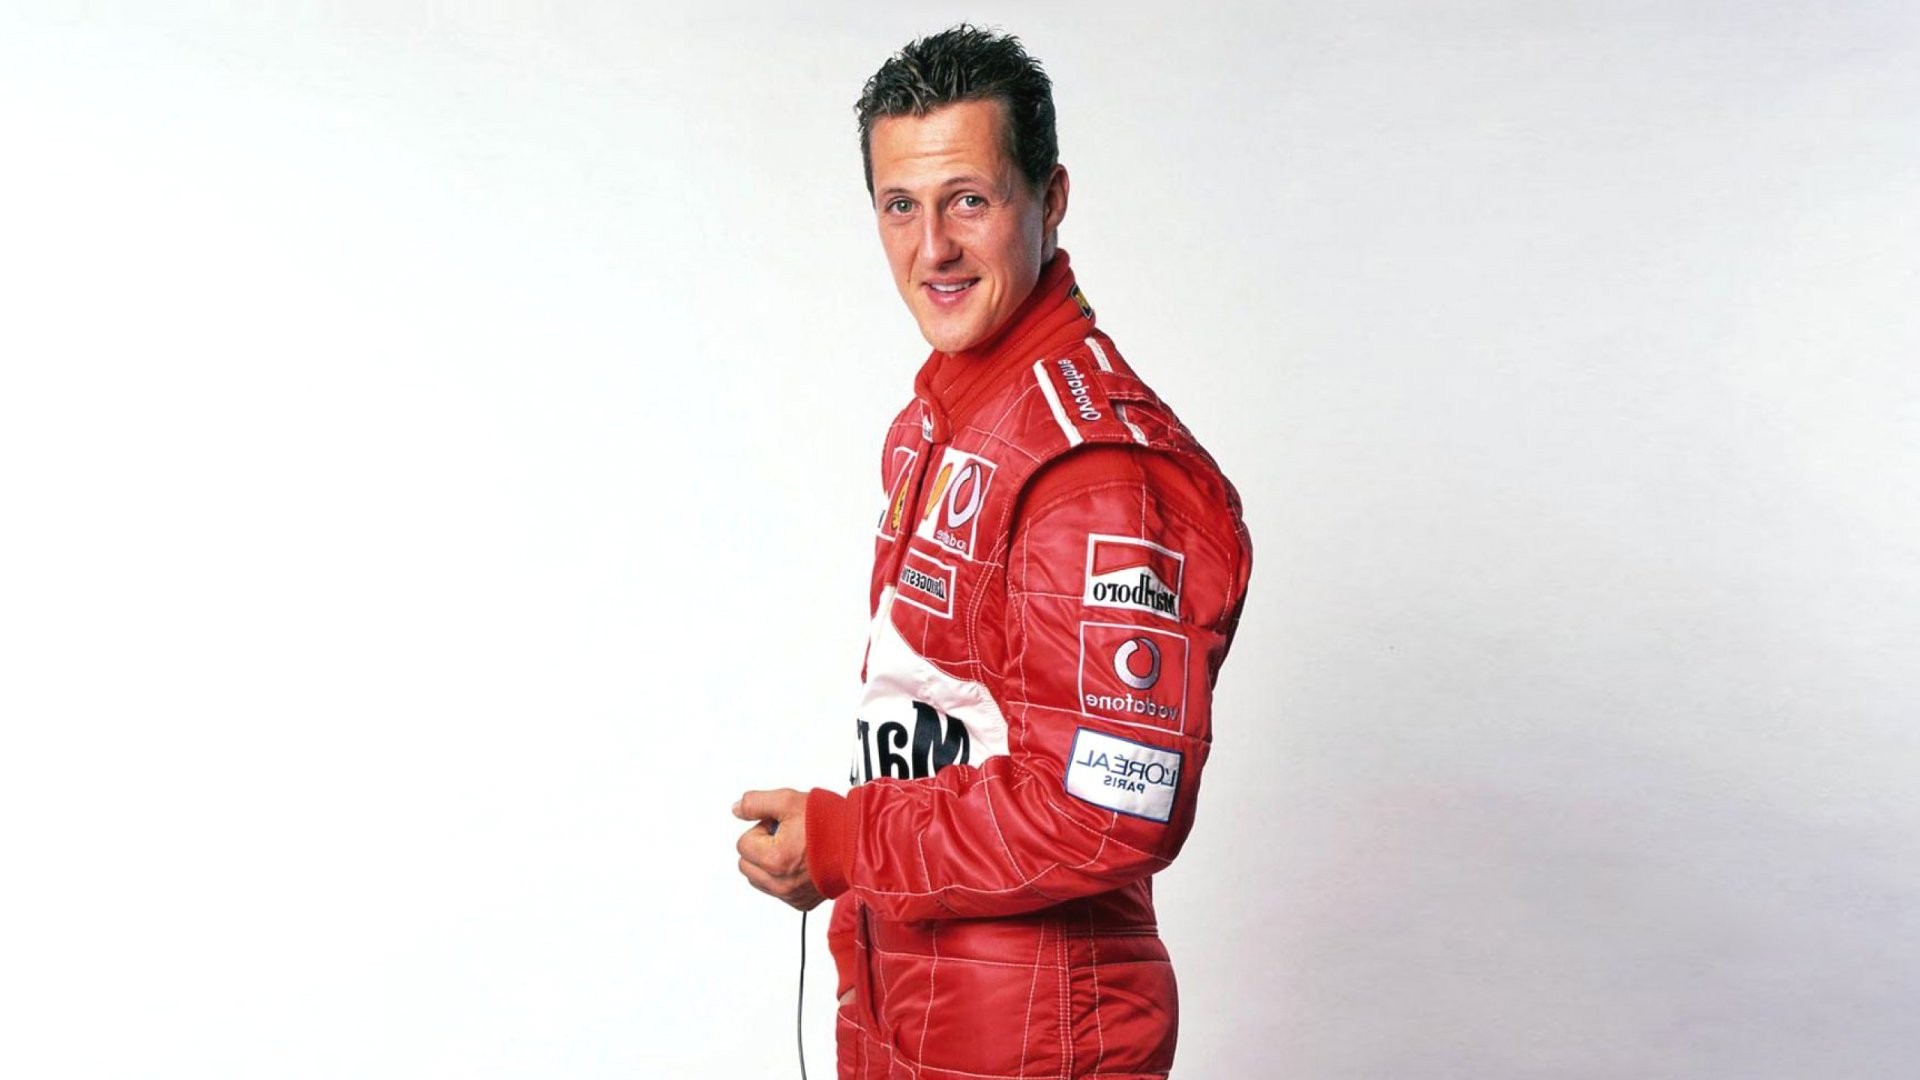 Non, Michael Schumacher ne quitte pas la Suisse pour l’Espagne